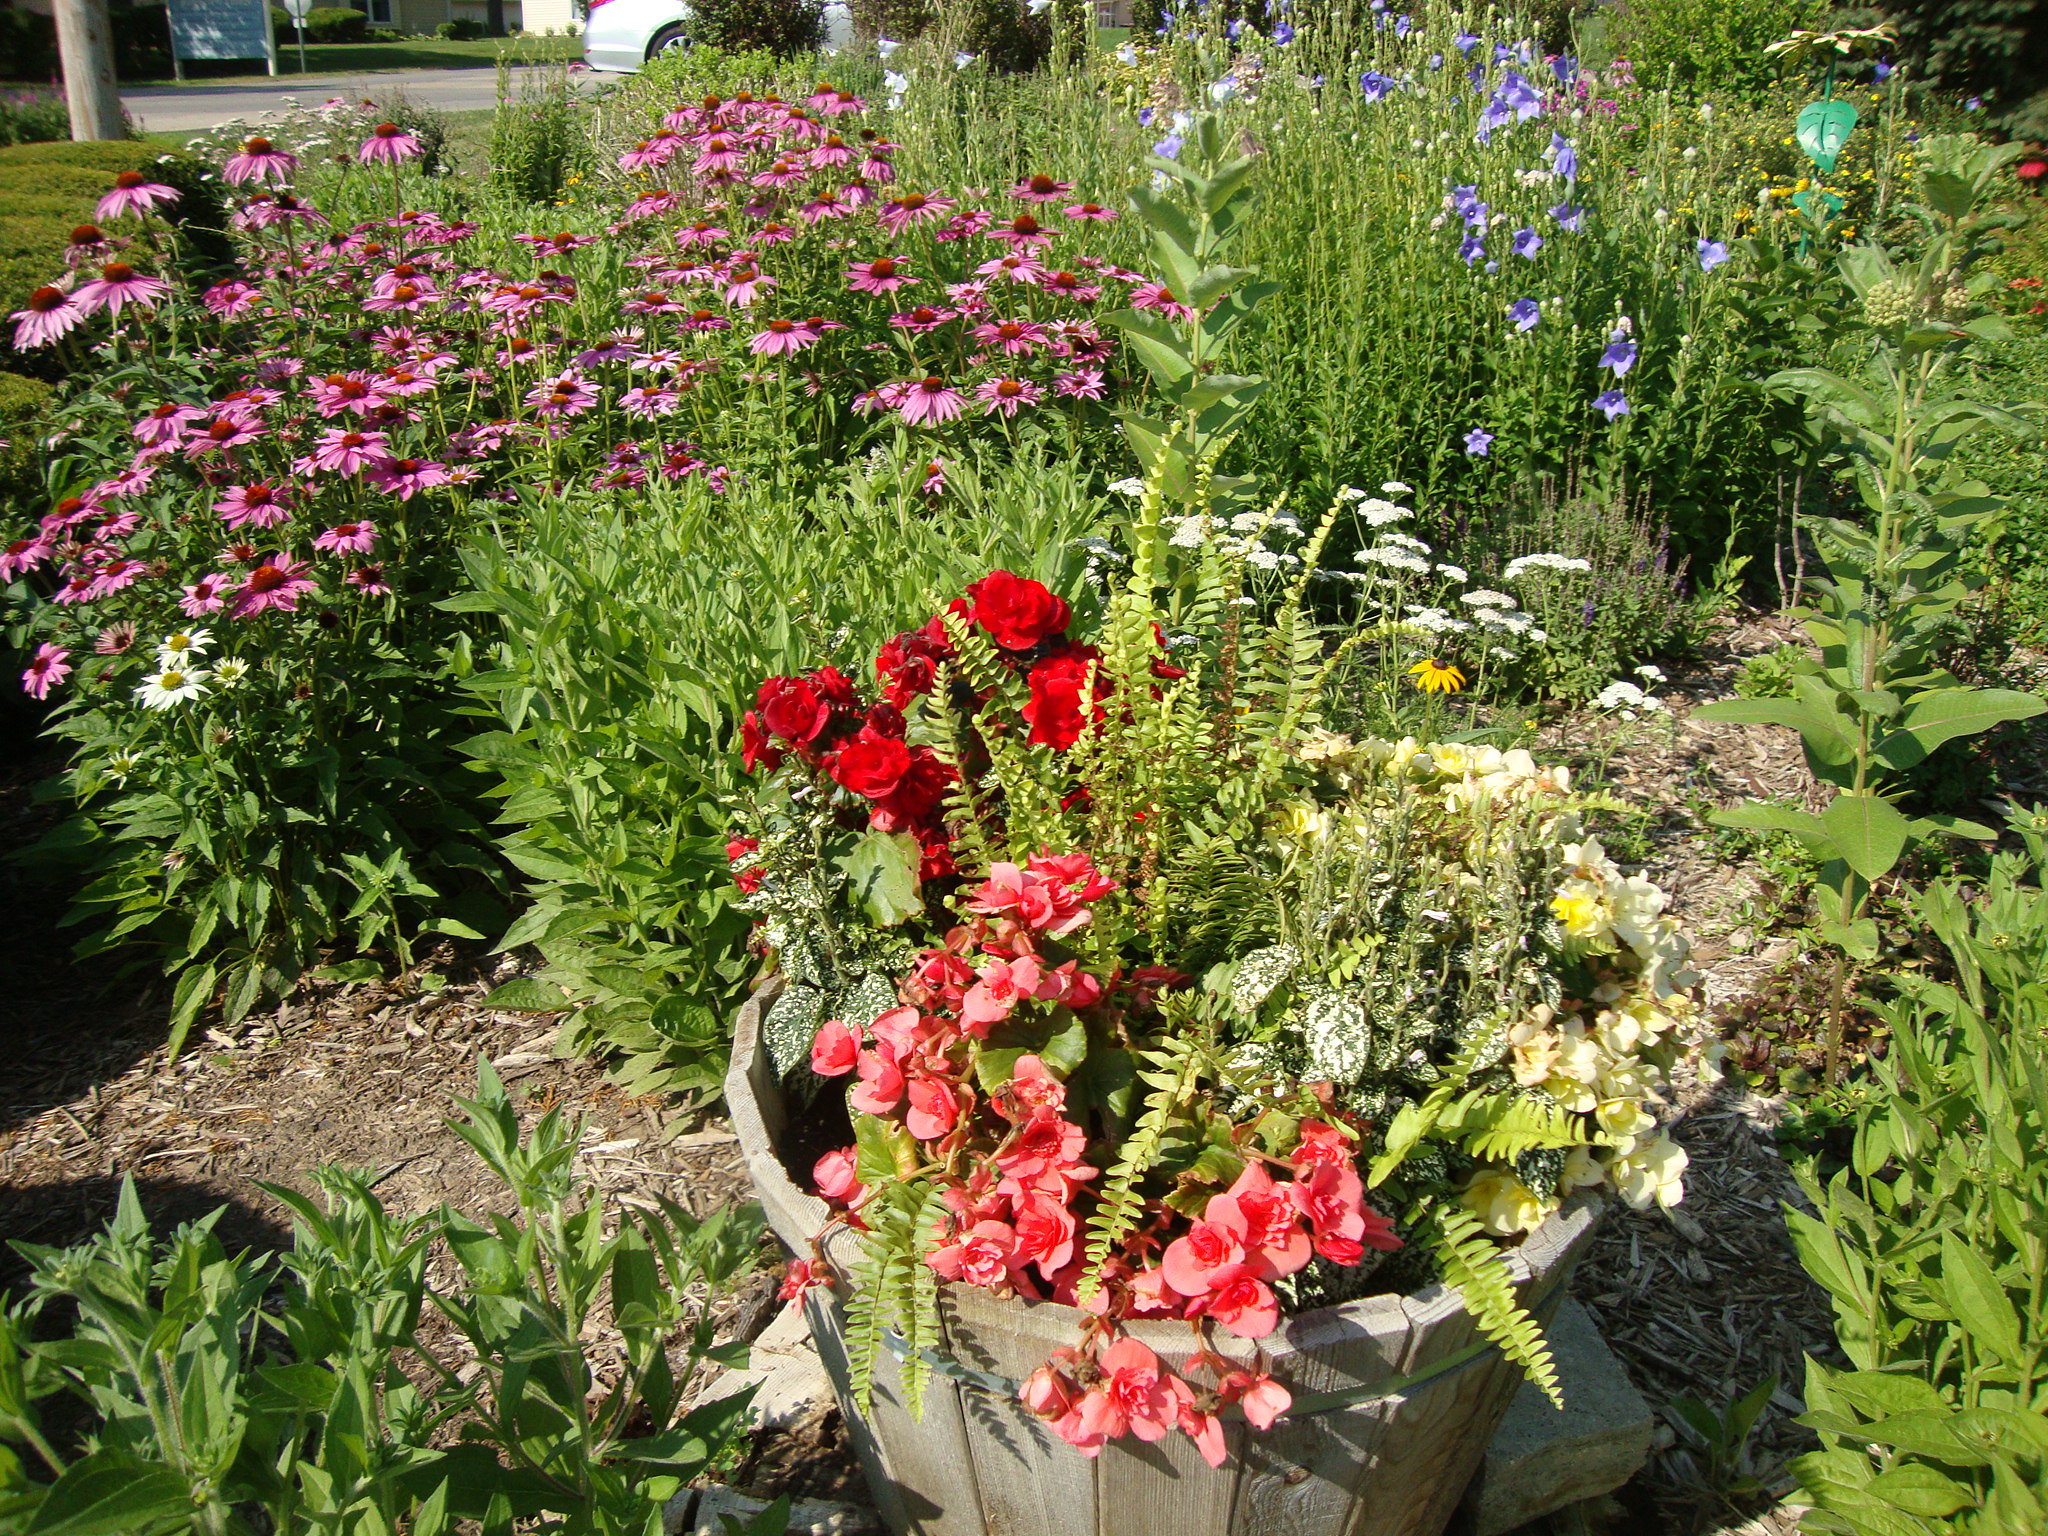 Flowers in a pot in a garden